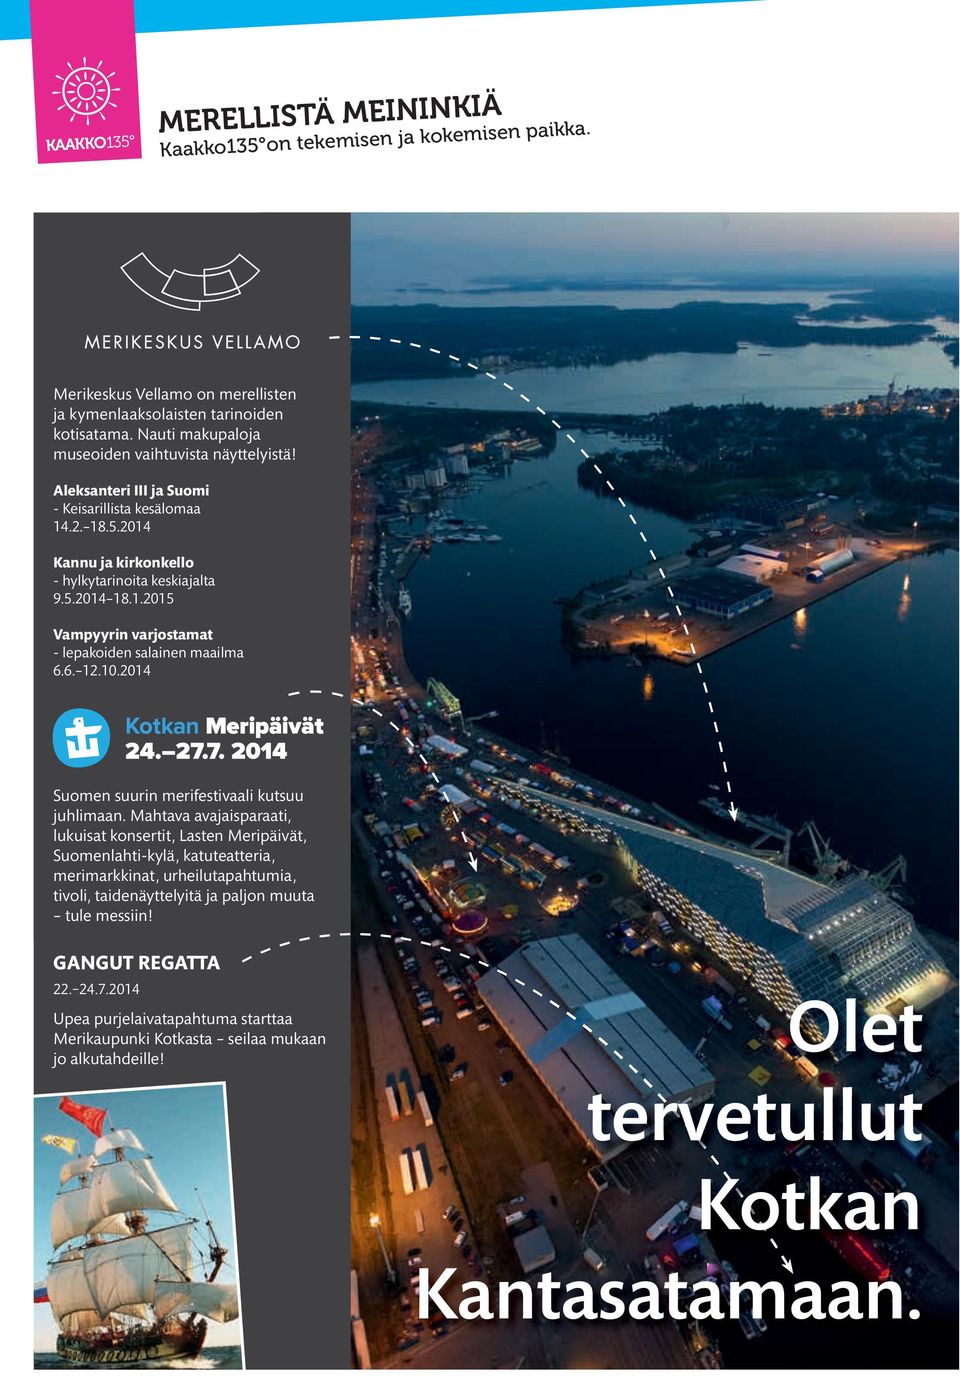 10.2014 Suomen suurin merifestivaali kutsuu juhlimaan.